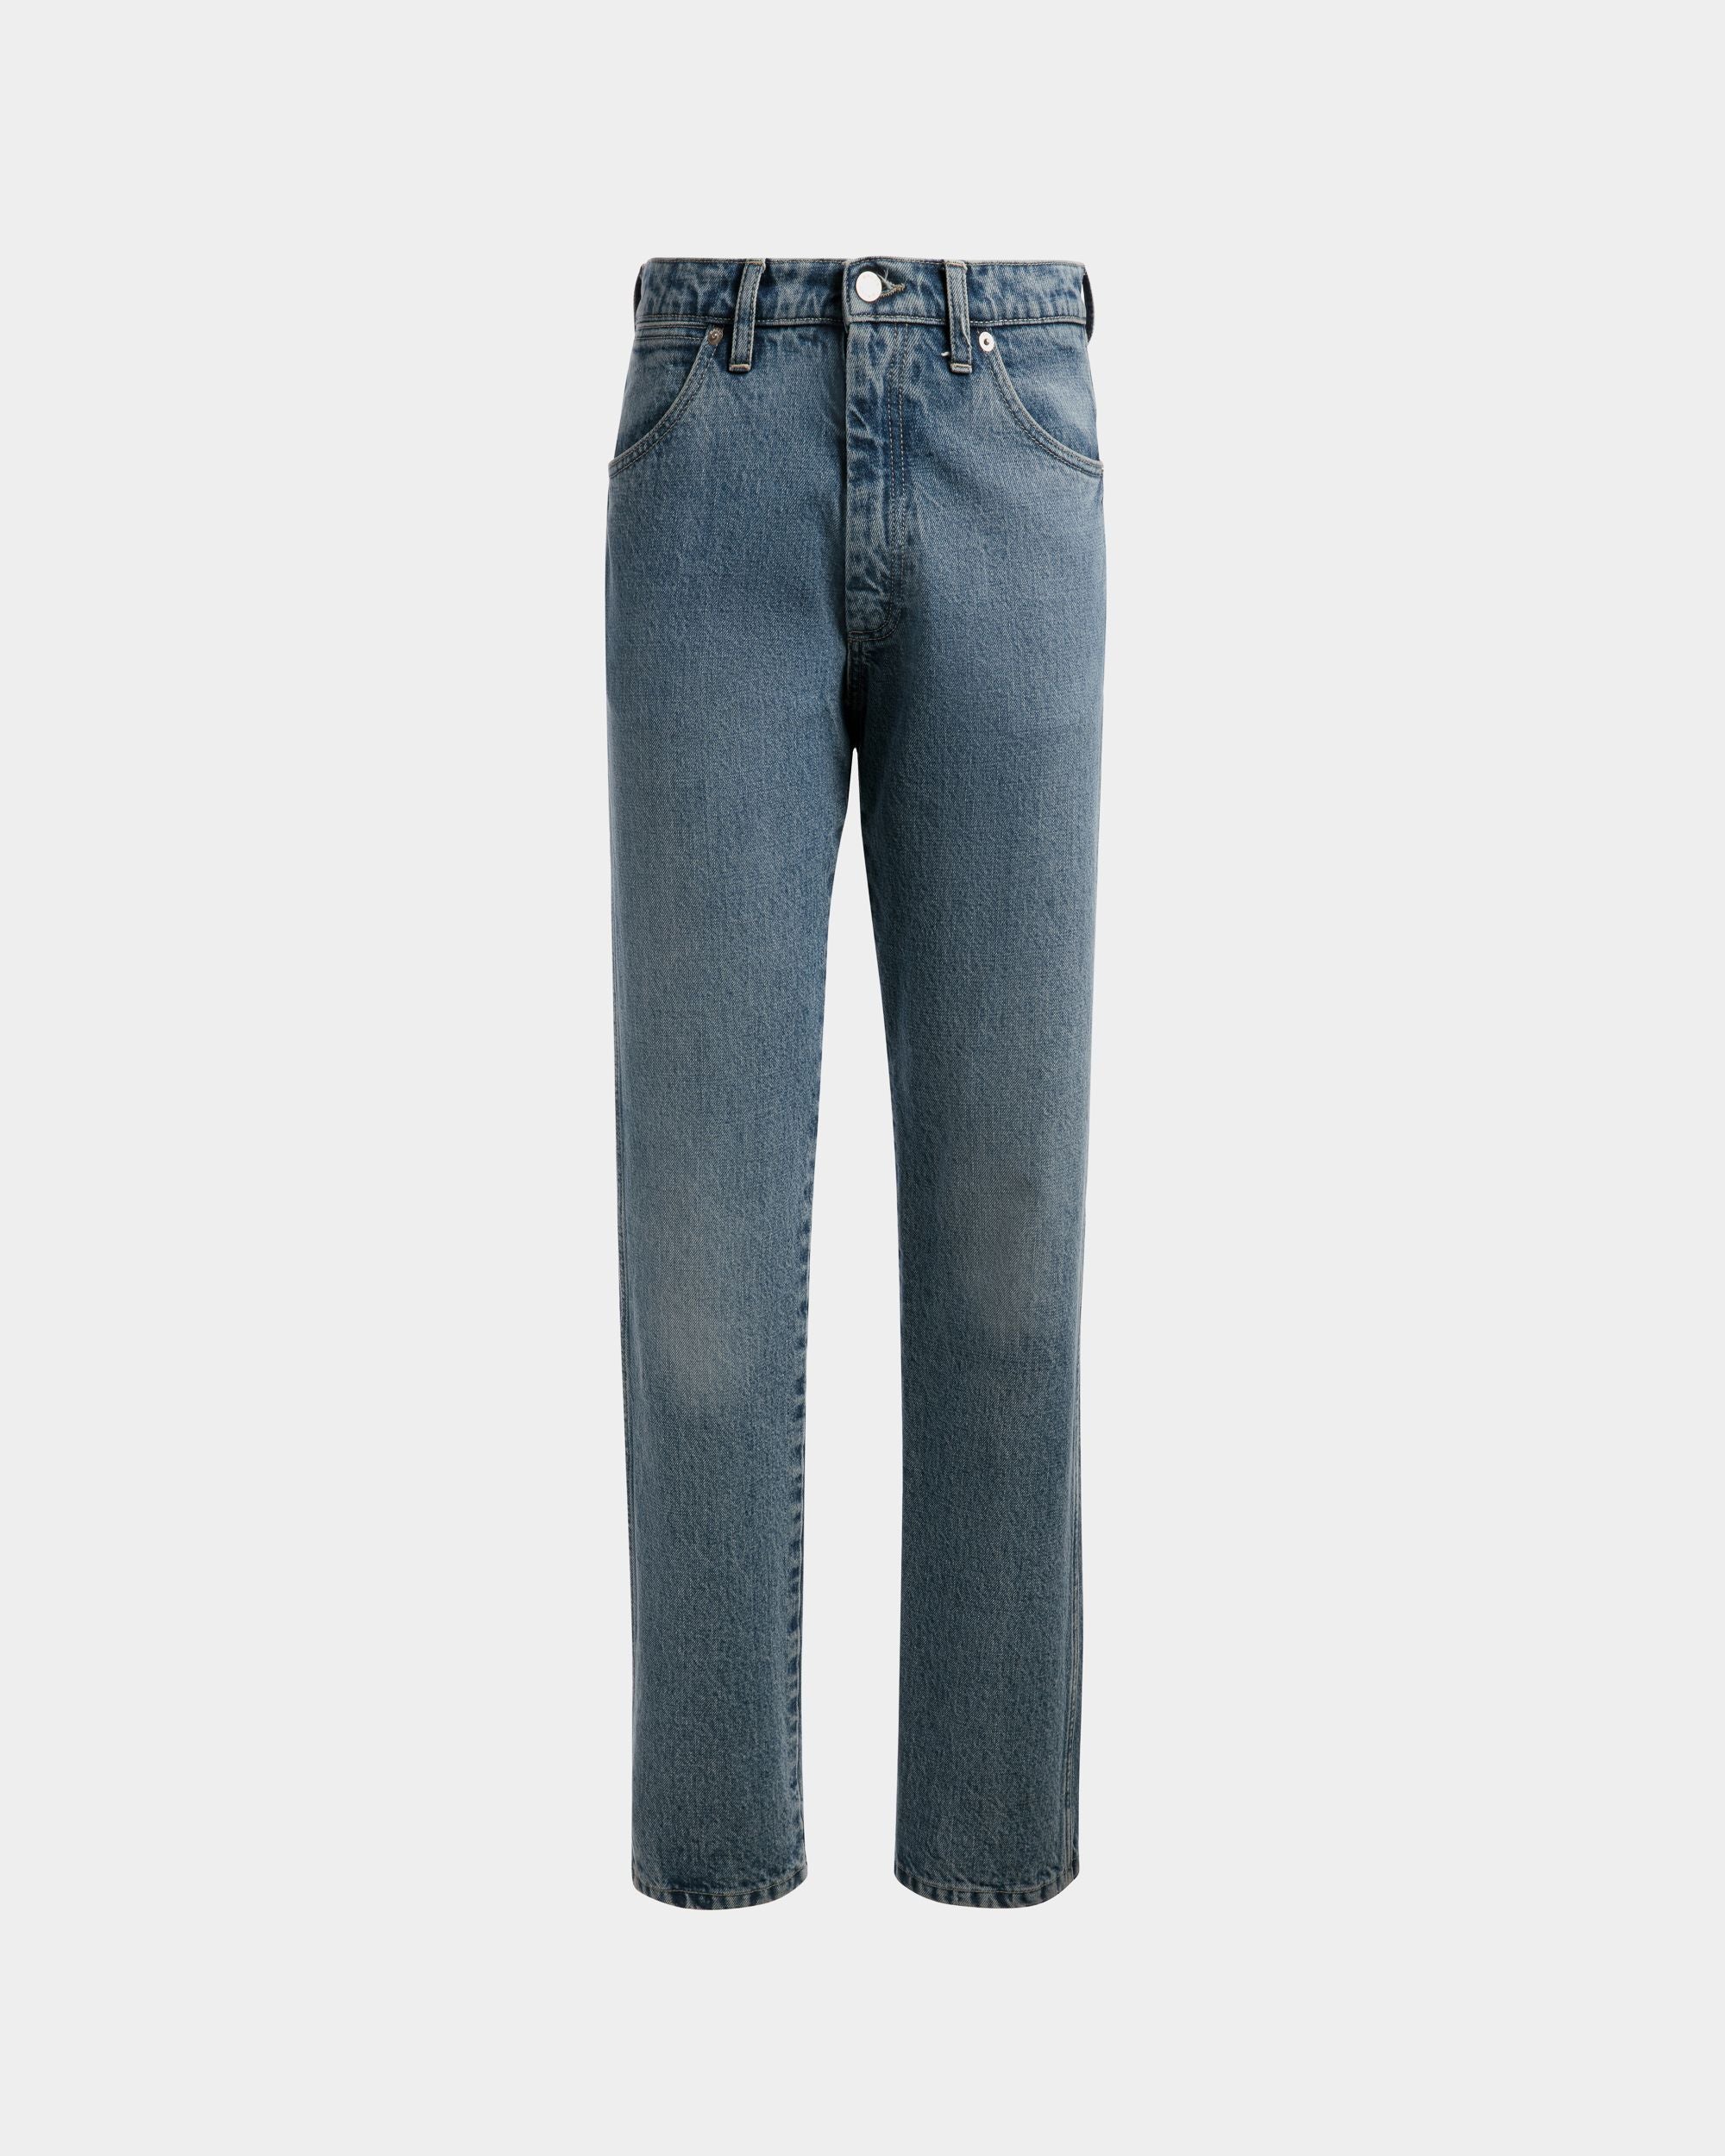 Straight Jeans | Men's Jeans | Light Blue Denim | Bally | Still Life Front